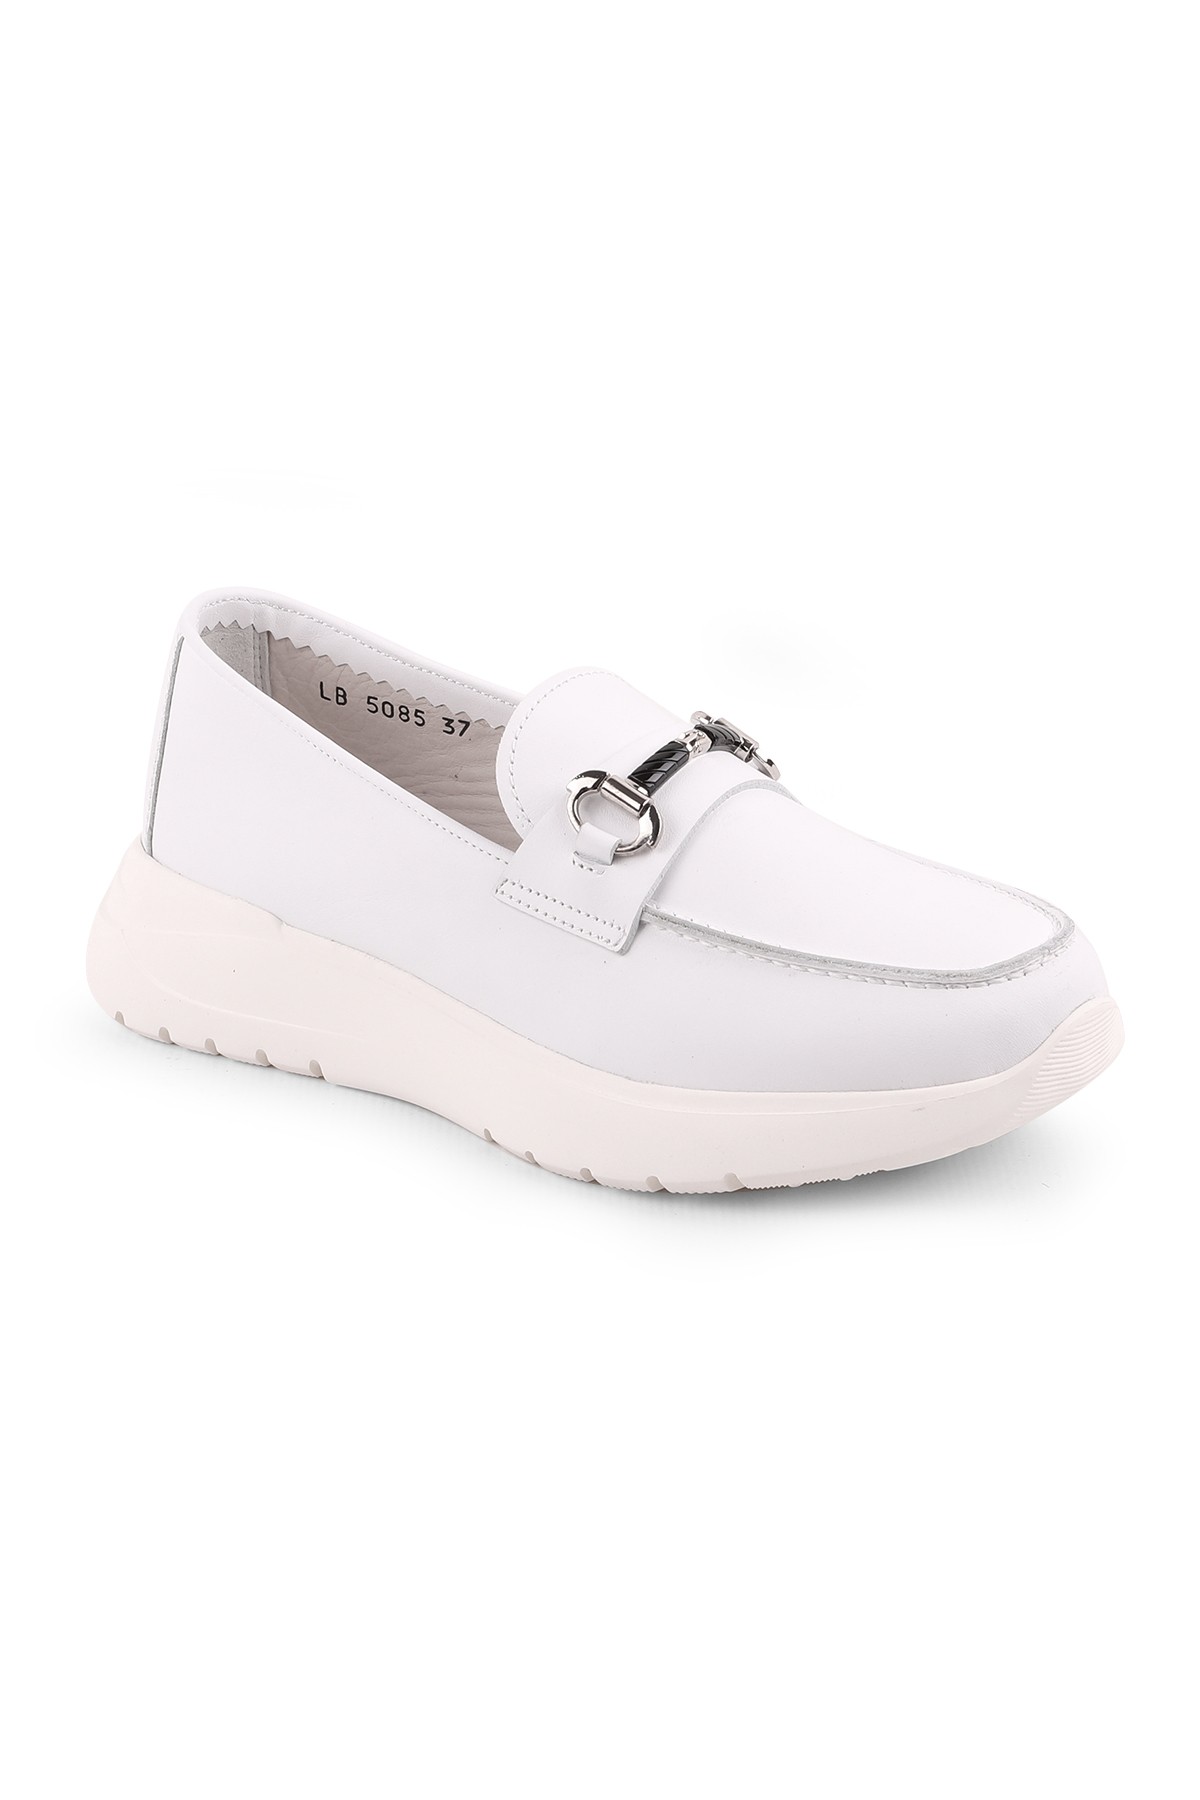 Libero LZ5085 Casual Kadın Ayakkabı - Beyaz